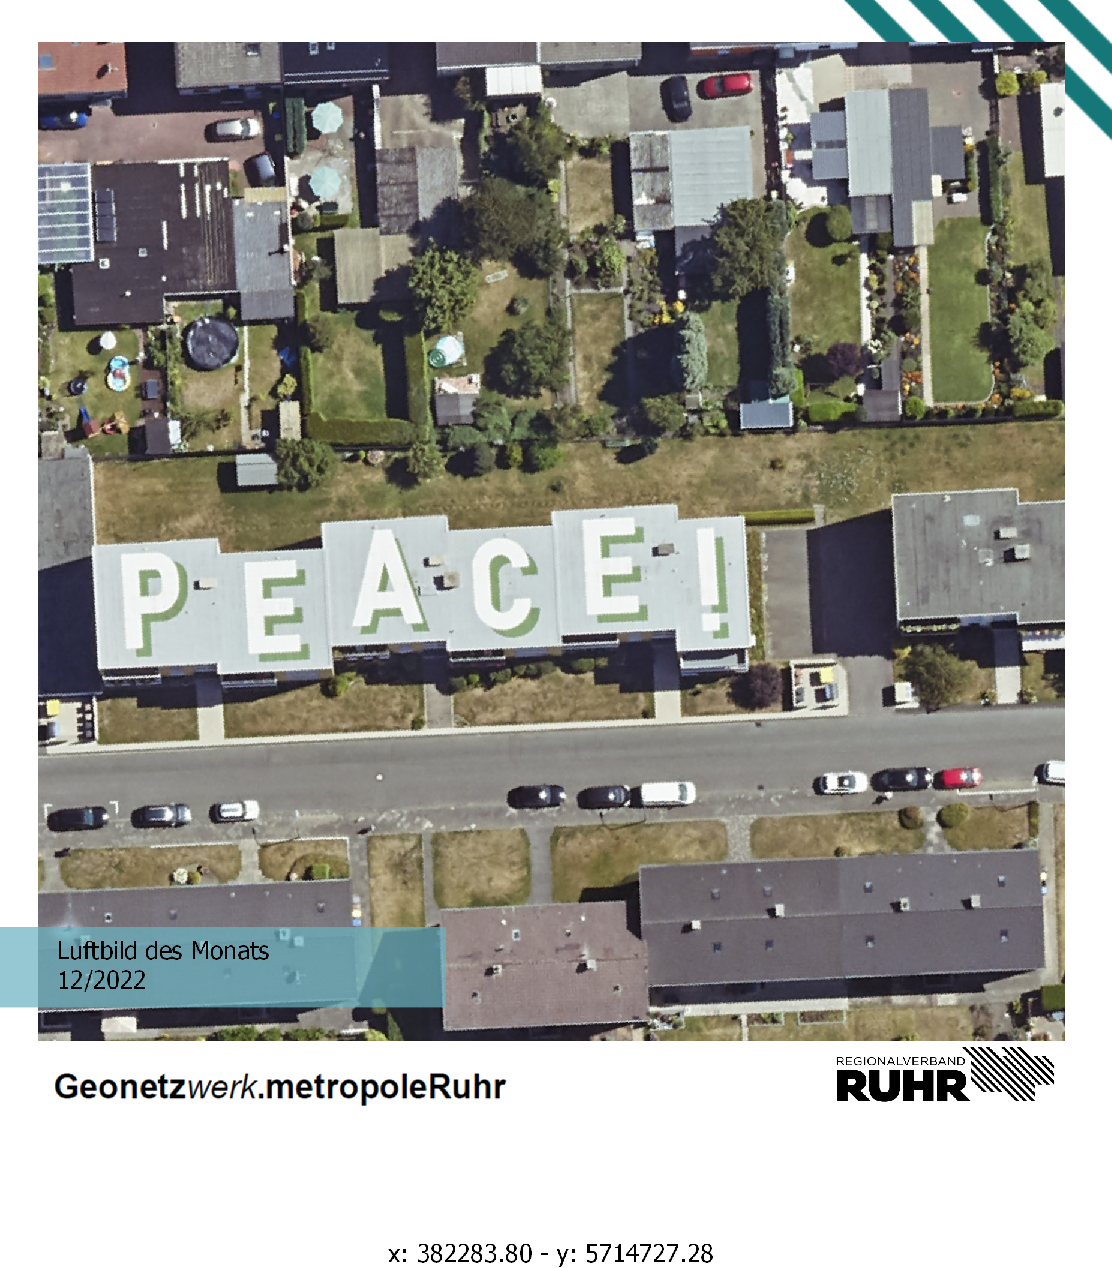 Luftbild des Monats Dezember 2022 mit einem "Peace"-Graffiti auf dem Dach eines Hauses in Castrop-Rauxel.